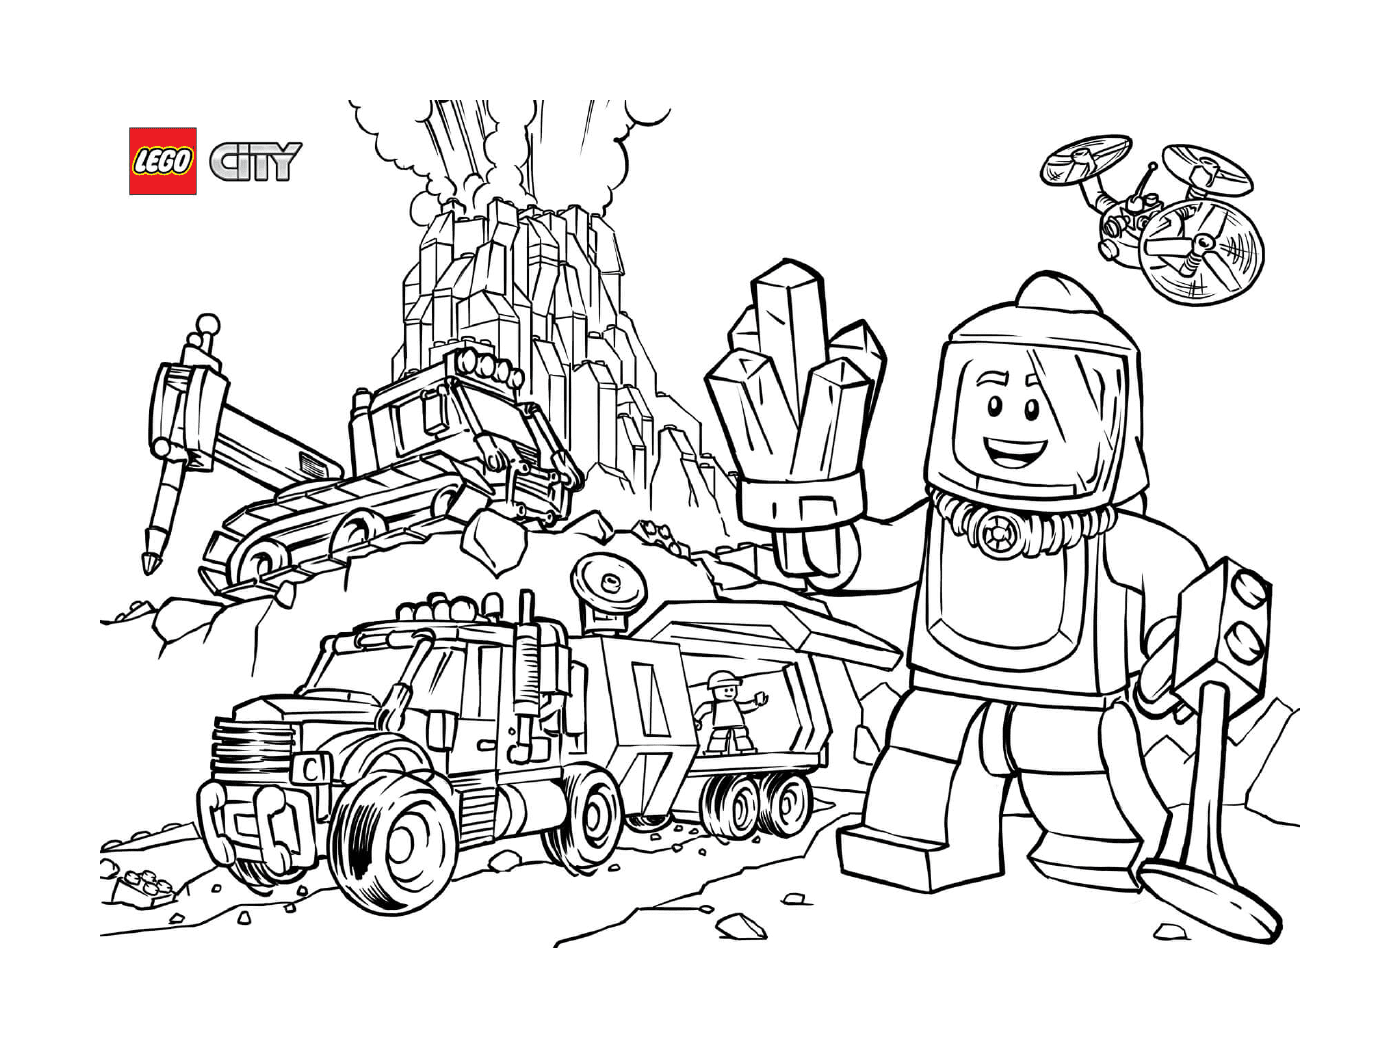  Exploradores do vulcão Lego City 